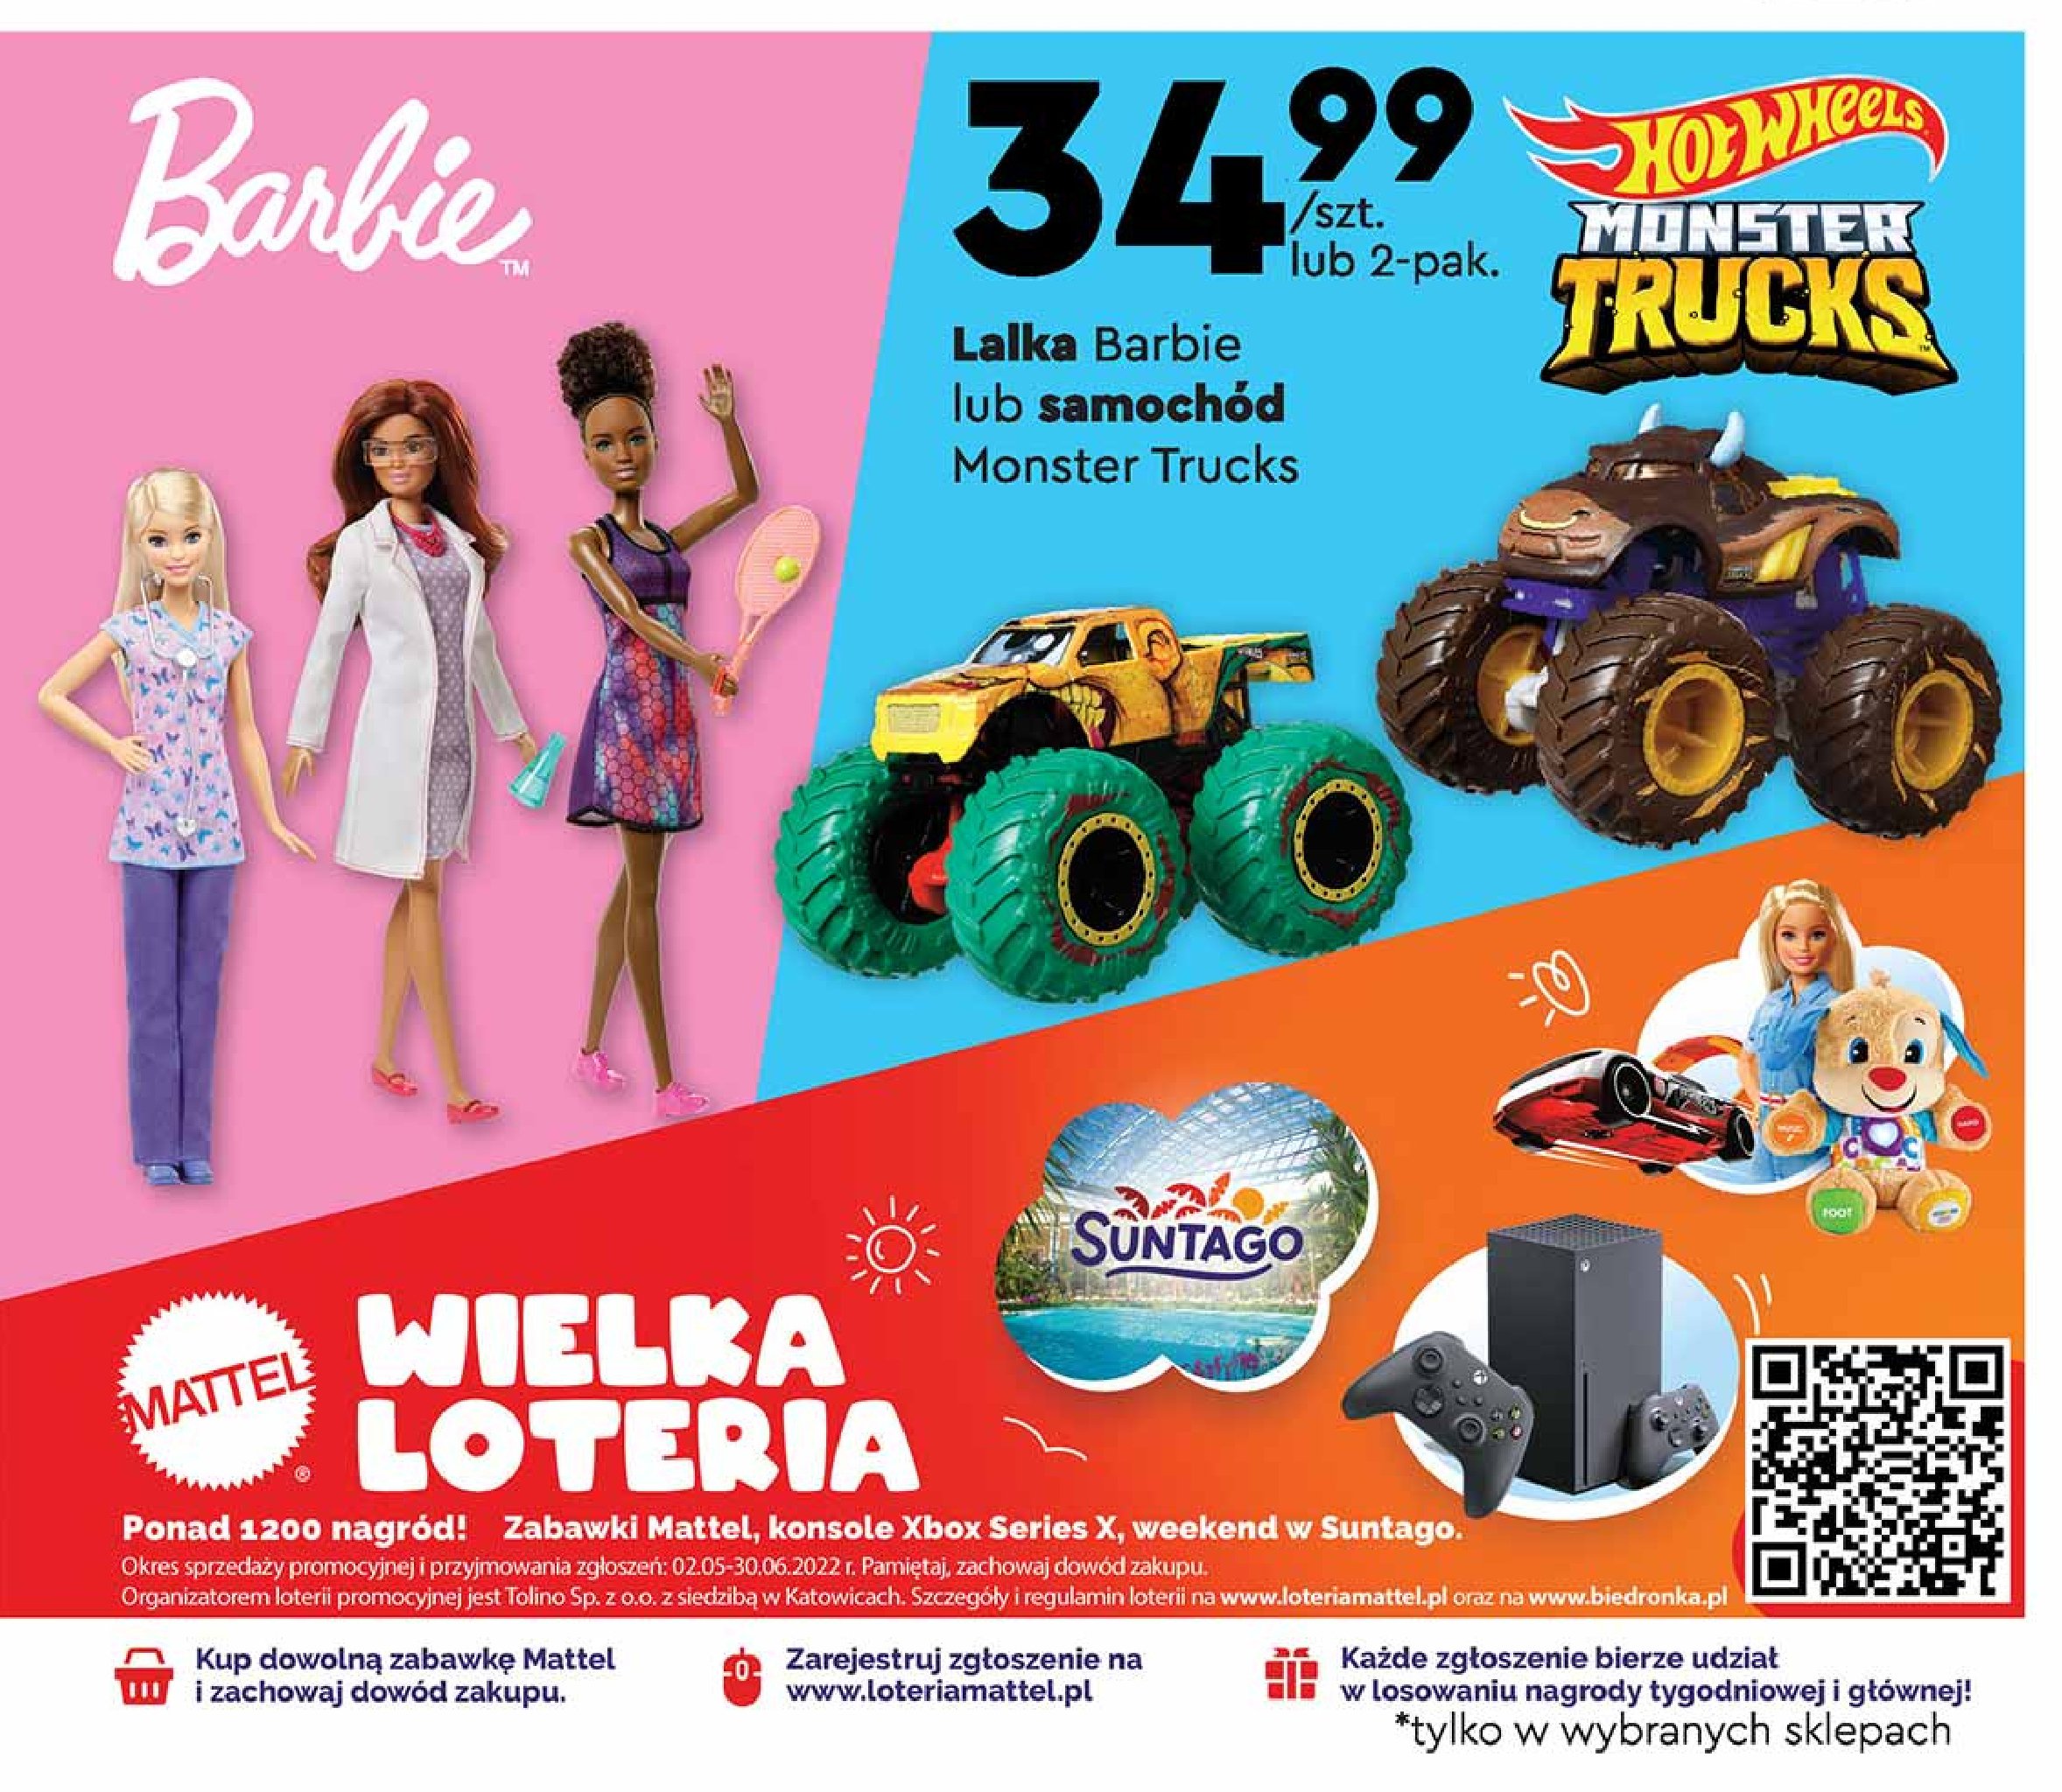 Pojazd monster trucks Mattel promocje